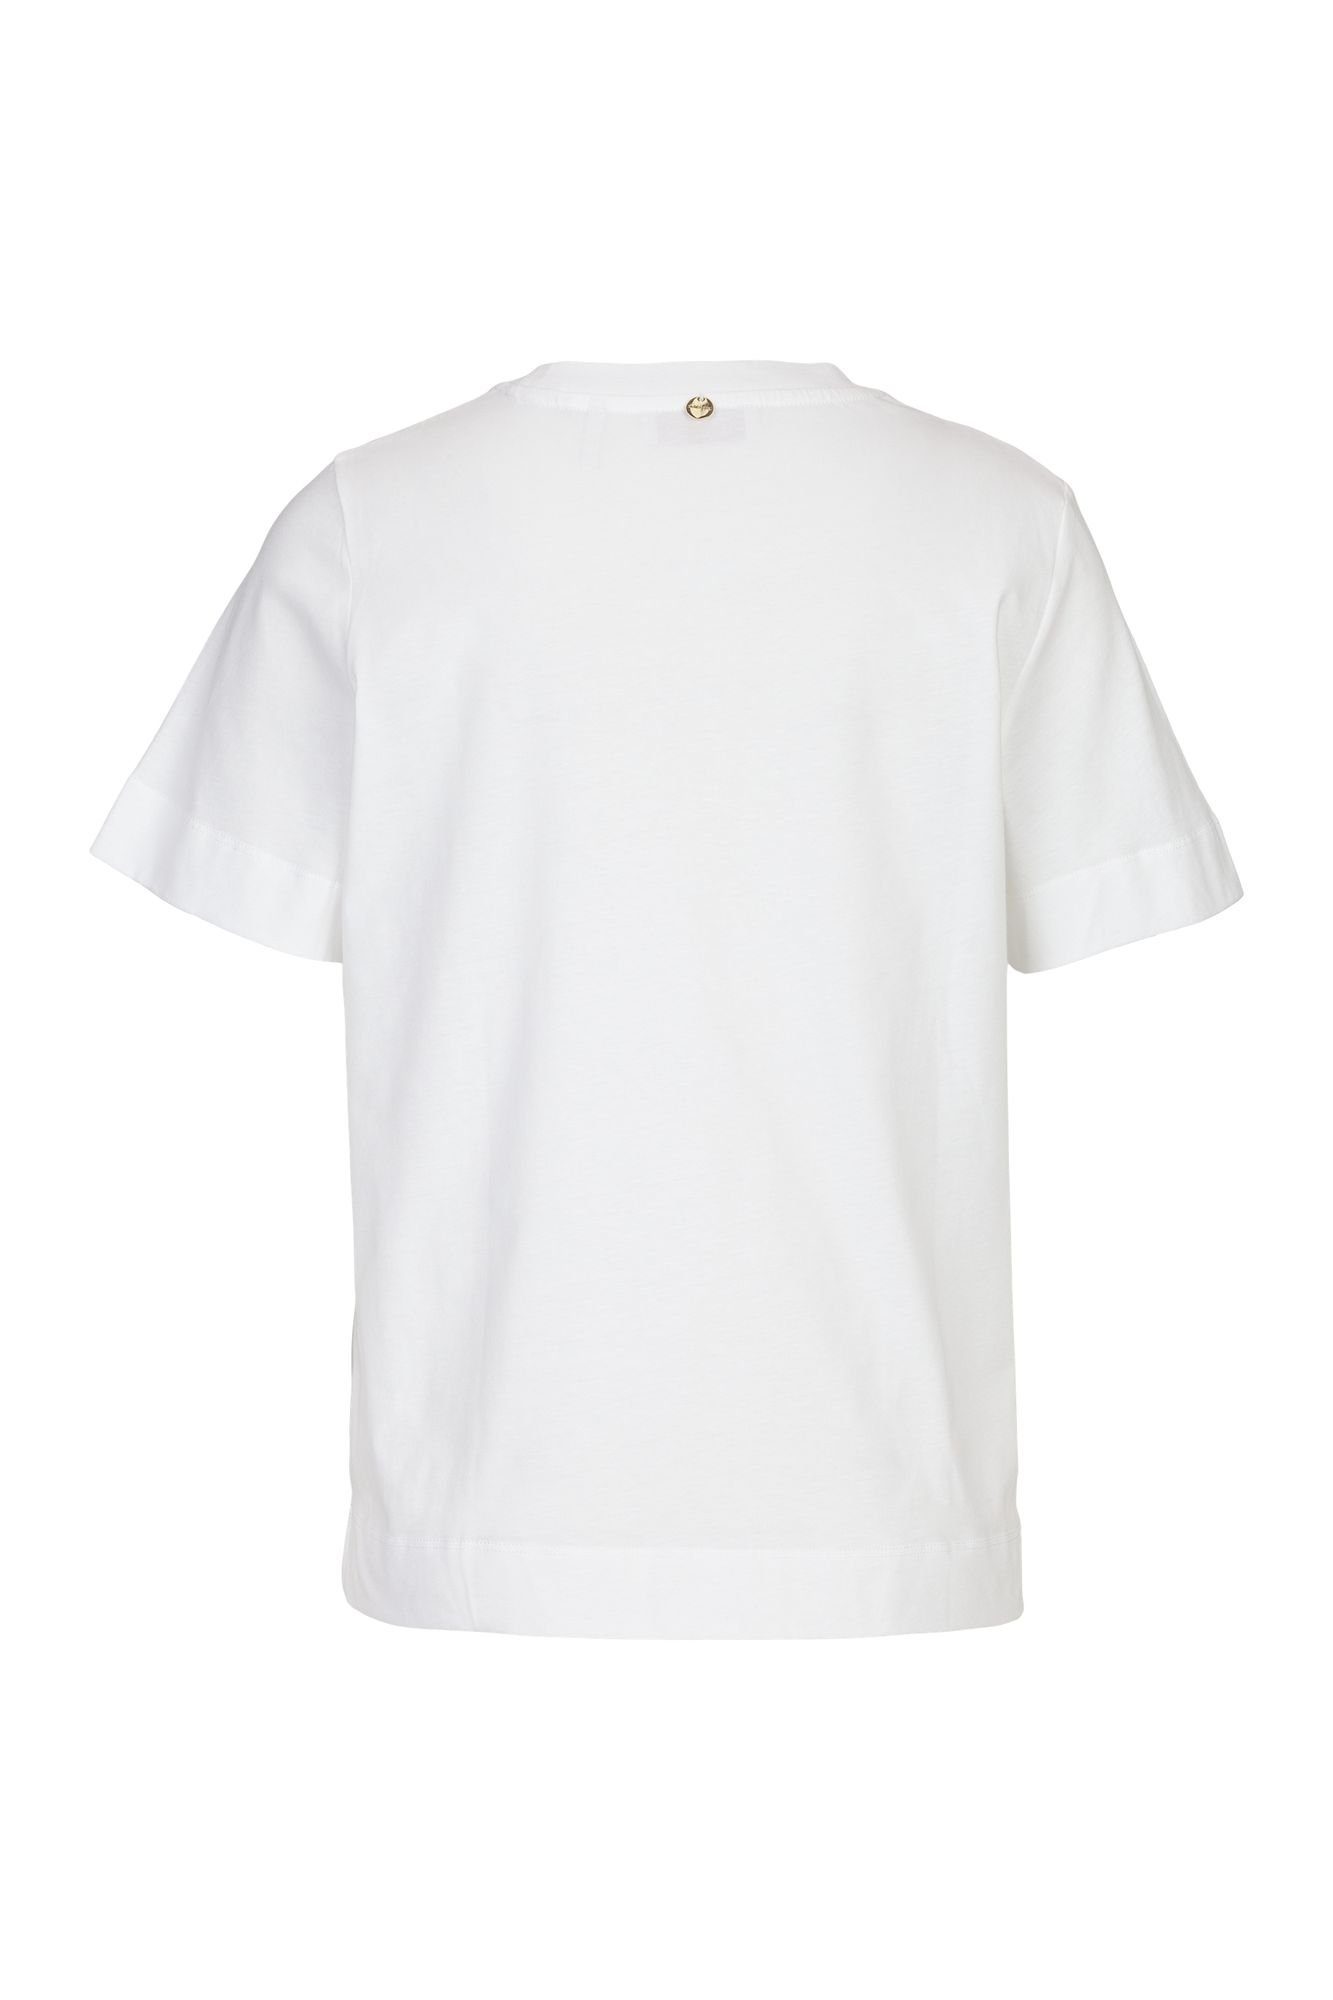 Rich & Royal T-Shirt Bedrucktes T-Shirt Rundhals